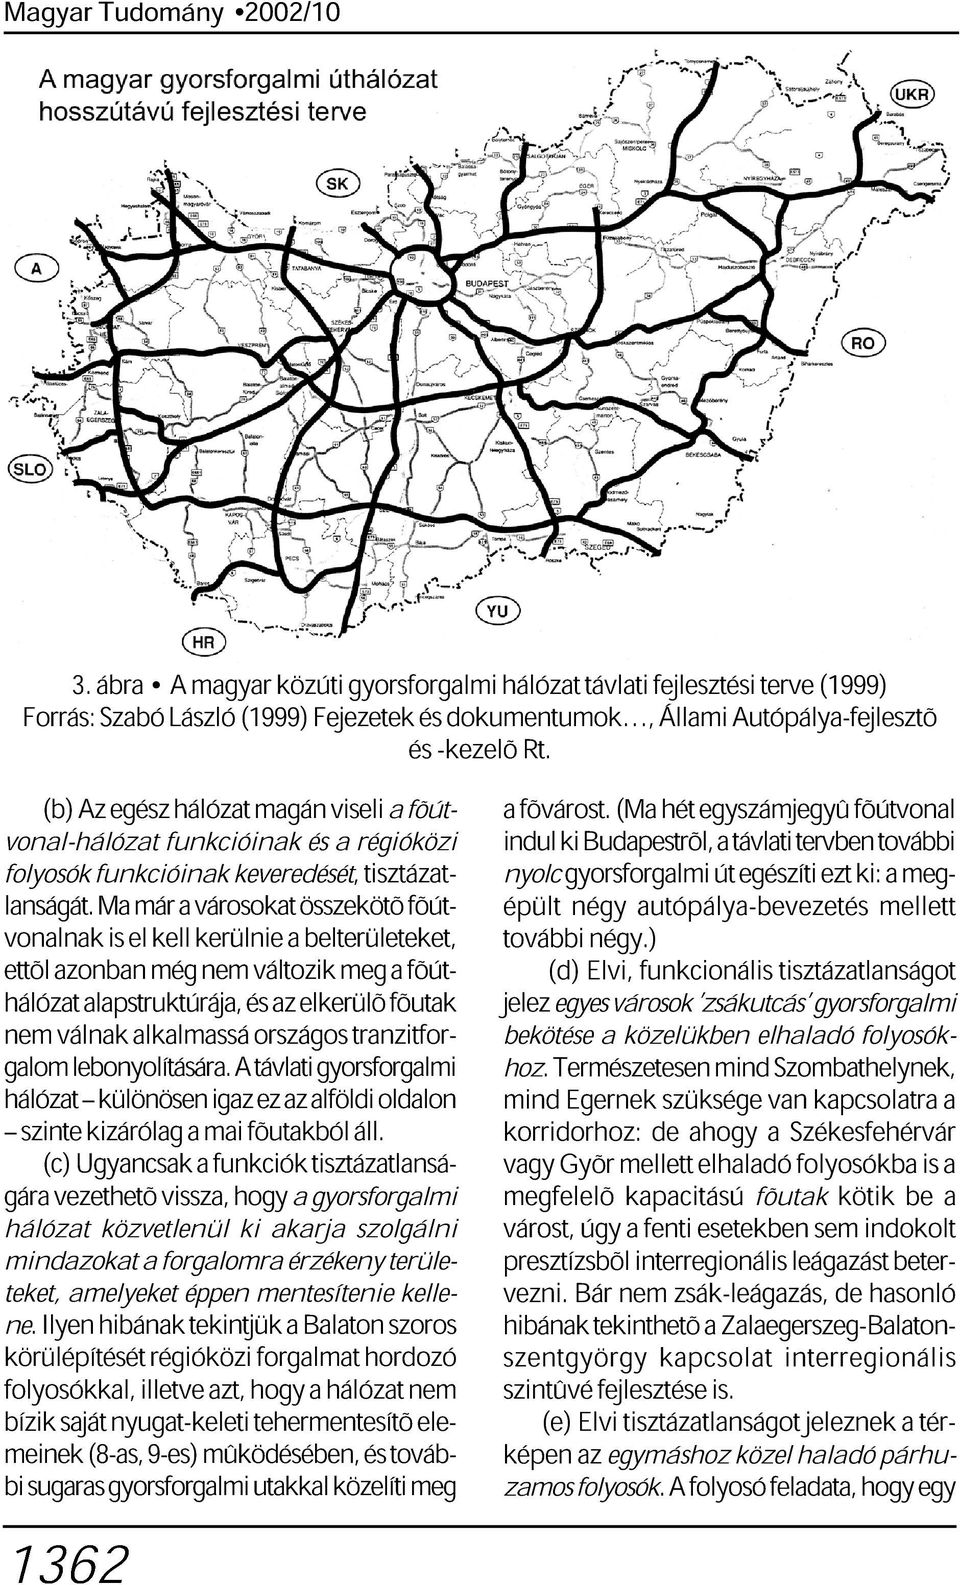 Ma már a városokat összekötõ fõút- nyolc ki gyorsforgalmi Budapestrõl, út a távlati egészíti tervben ezt ki: további a meg- indul vonalnak is el kell kerülnie a belterületeket, épült négy